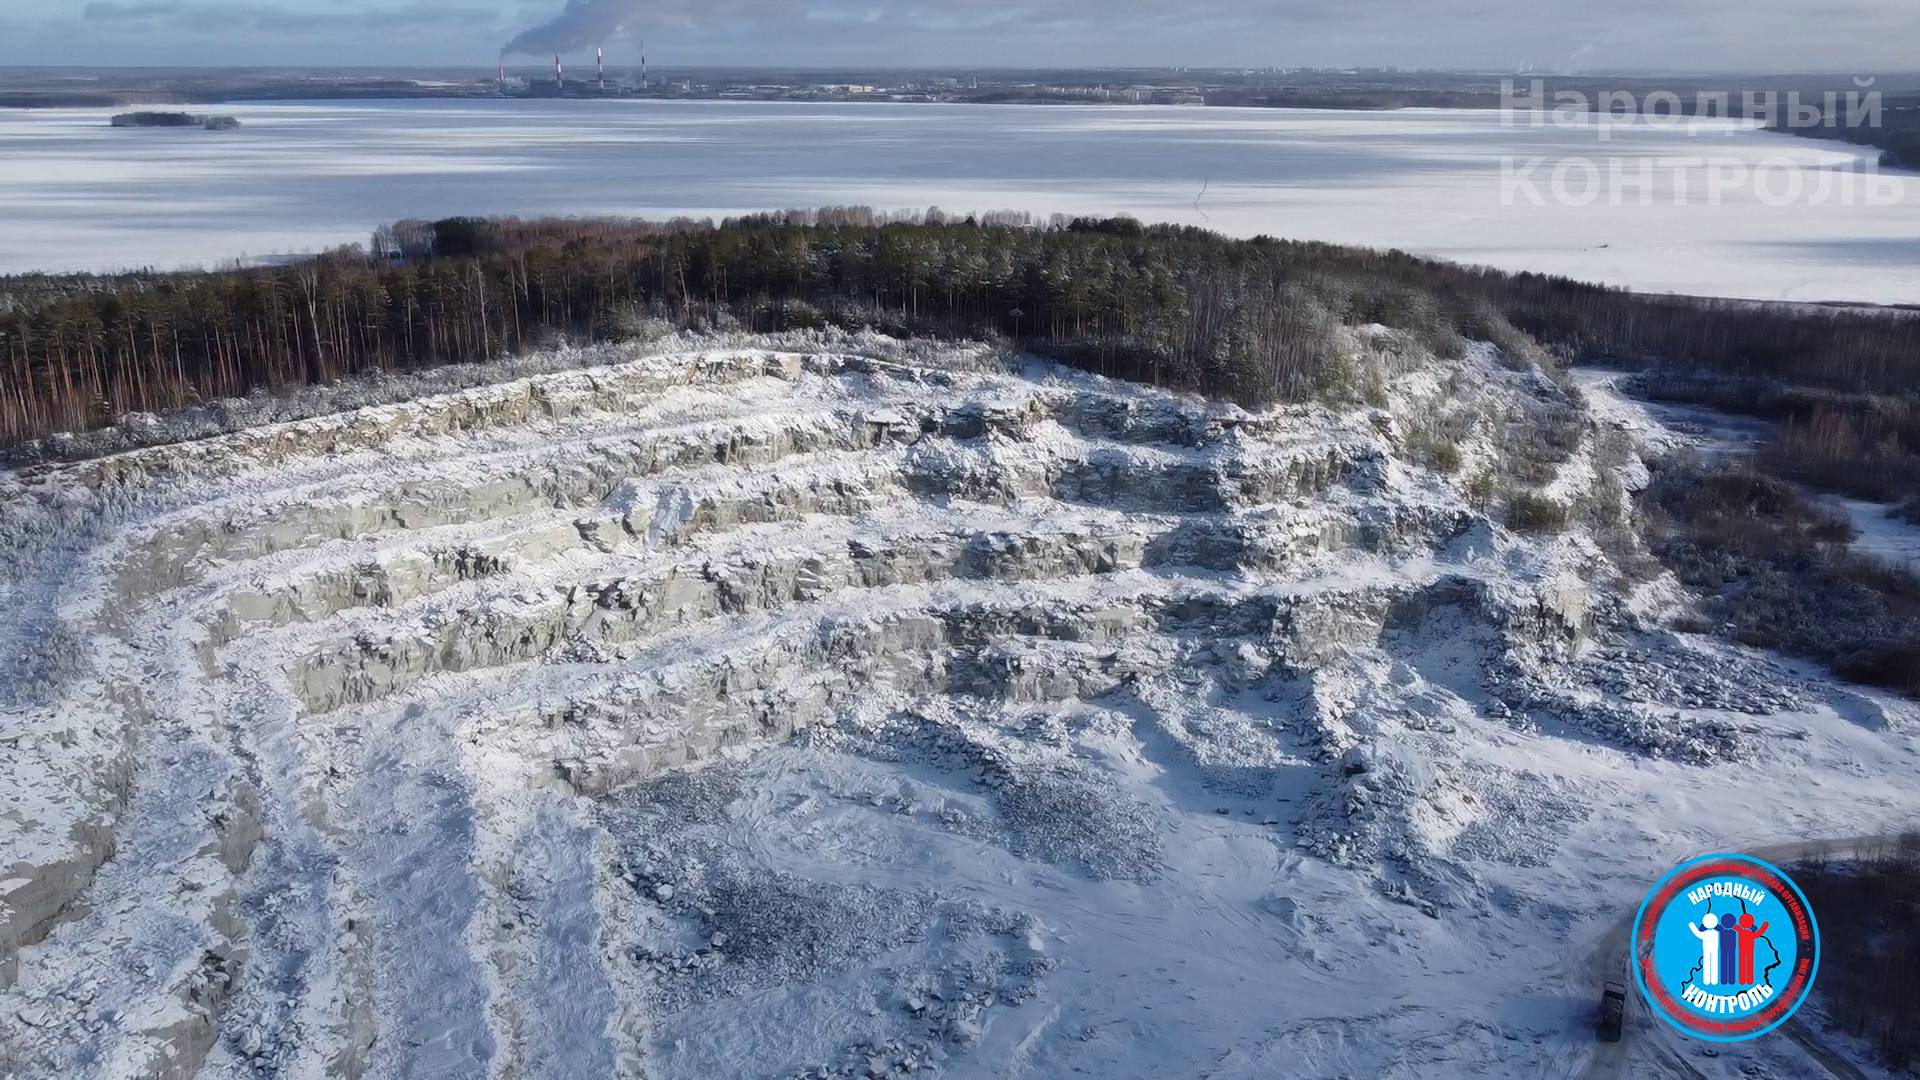 Ландшафтный заказник «Озеро Исетское с окружающими лесами» с массовой вырубкой леса может привести к его исчезновению